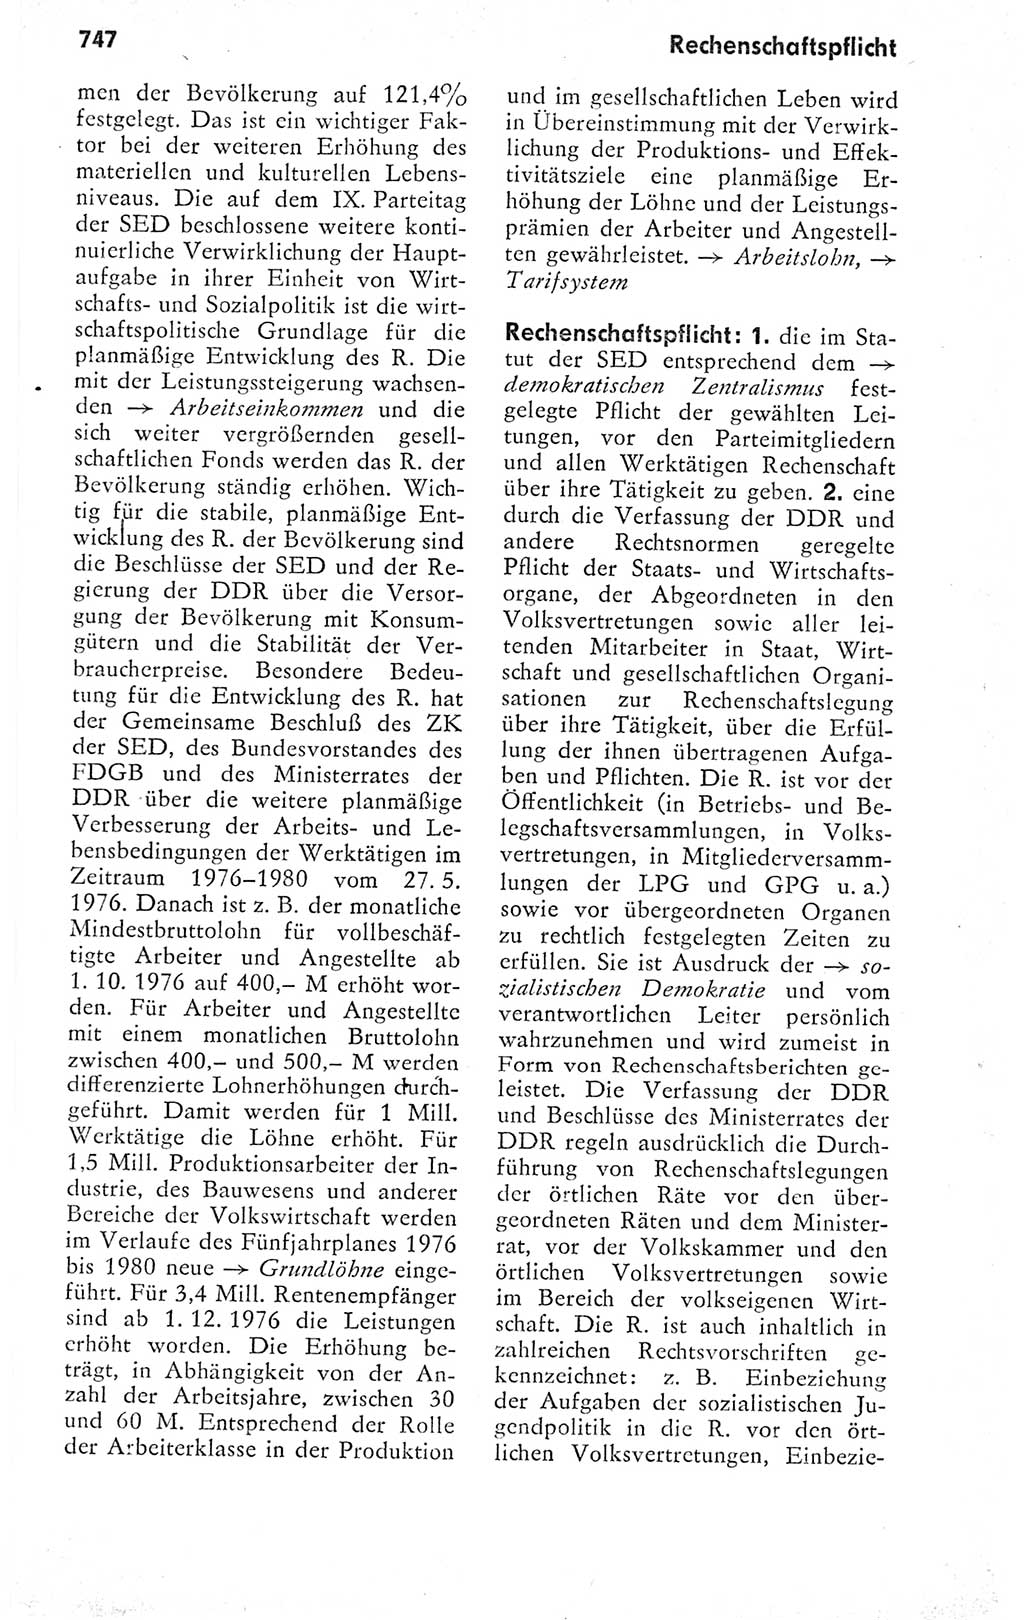 Kleines politisches Wörterbuch [Deutsche Demokratische Republik (DDR)] 1978, Seite 747 (Kl. pol. Wb. DDR 1978, S. 747)